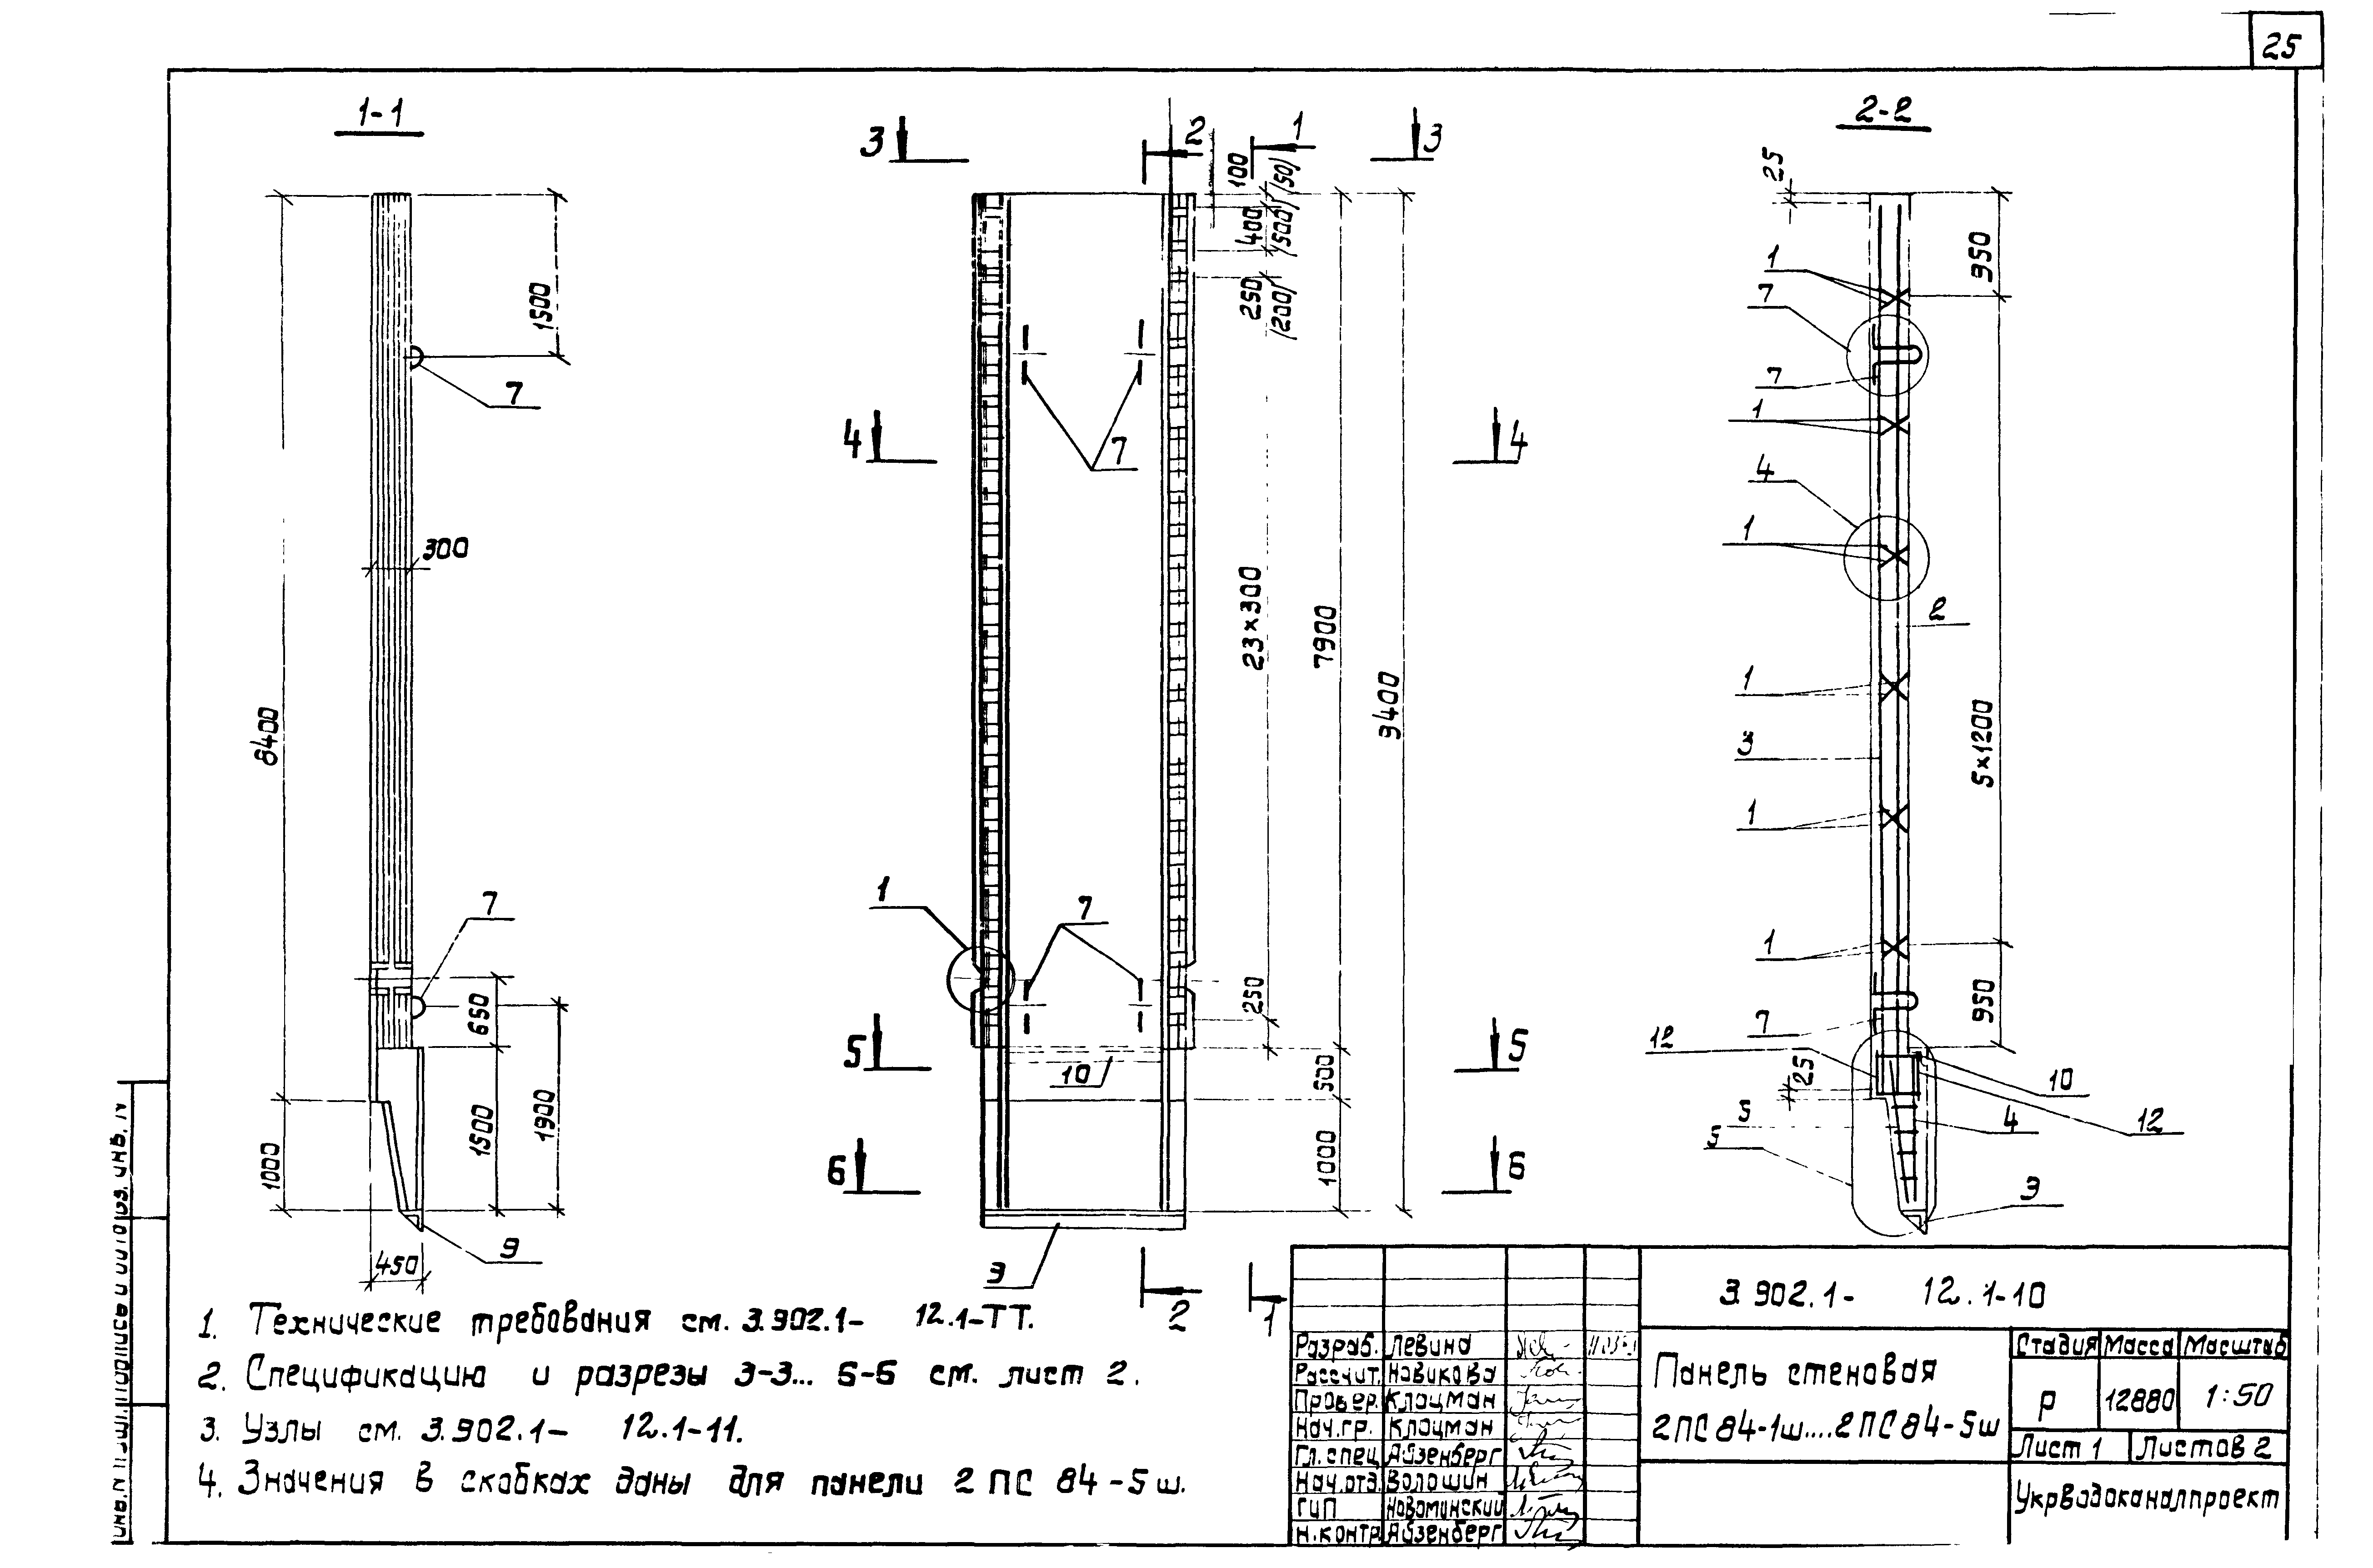 Панель стеновая 2ПС84-5ш Серия 3.902.1-12, вып.1